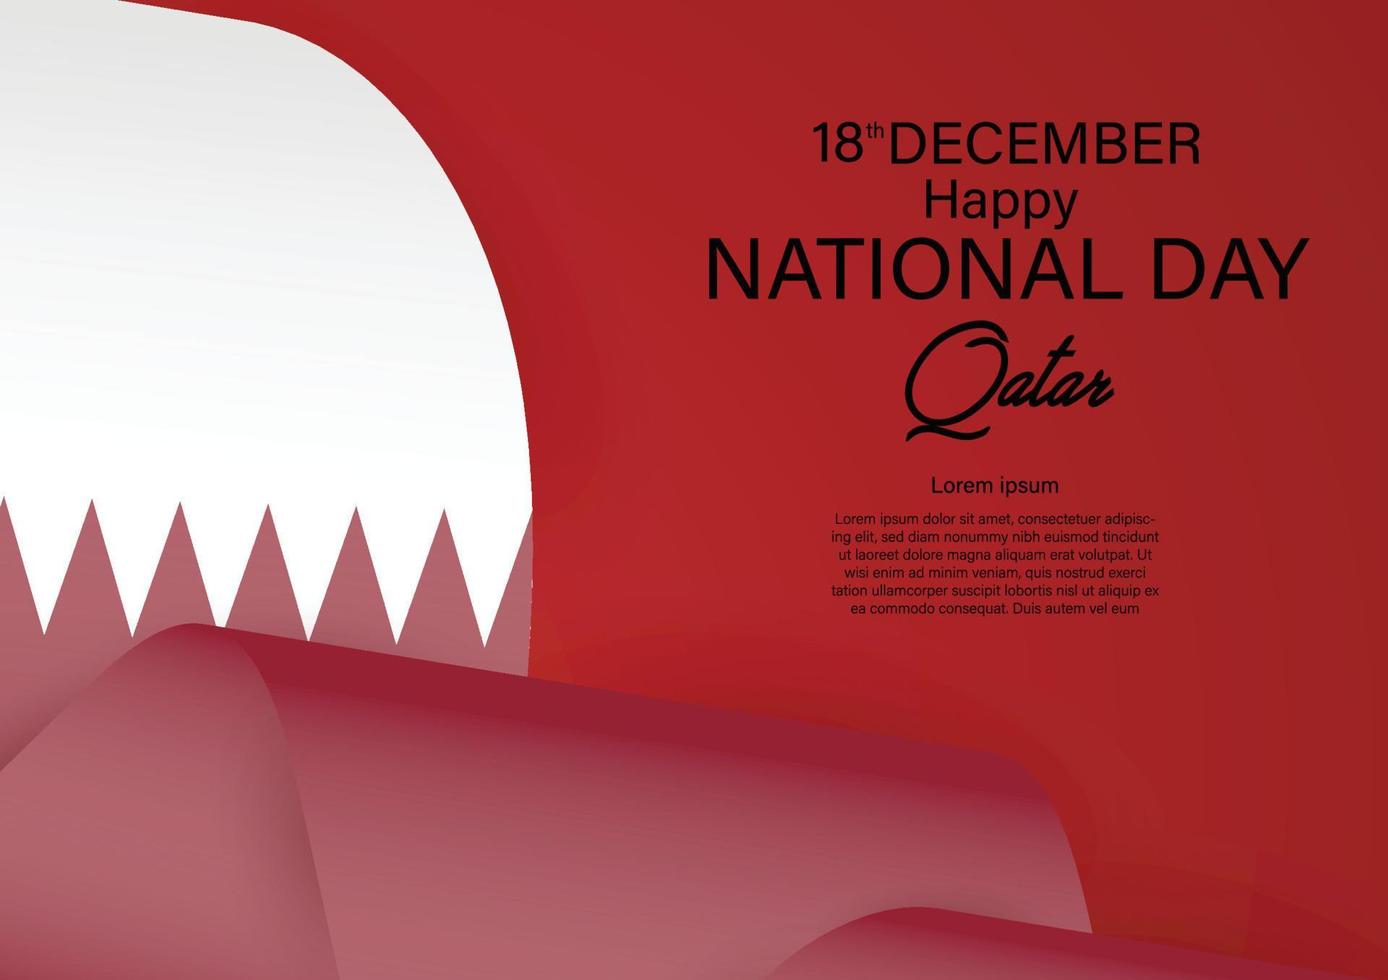 fête nationale du qatar le 18 décembre avec la couleur du drapeau du qatar en ruban. illustration vectorielle vecteur